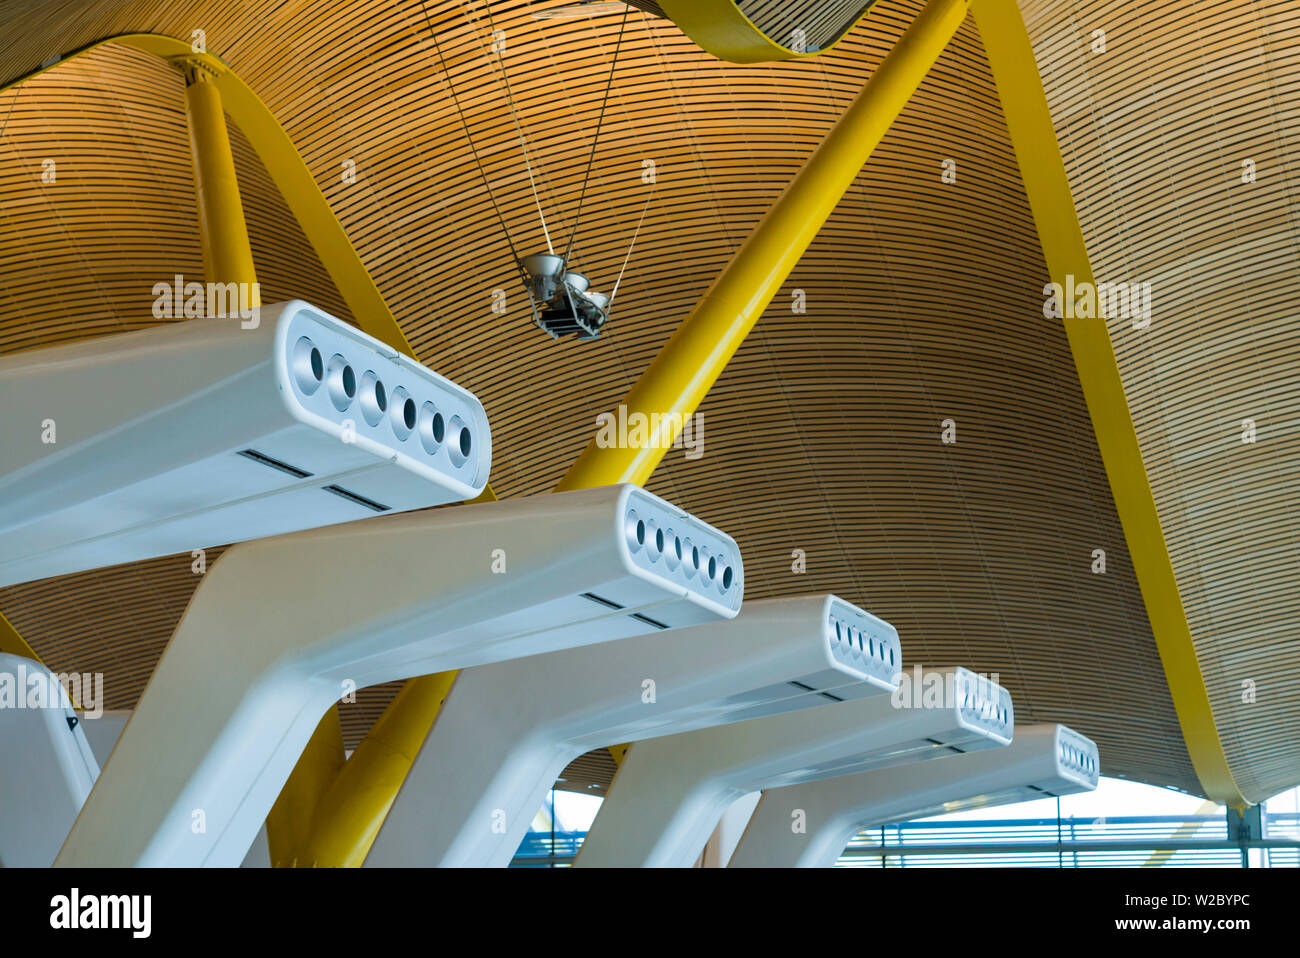 Spanien, Madrid, Adolfo Suarez Madrid-Barajas Flughafen, internationaler terminal architektonisches detail Stockfoto